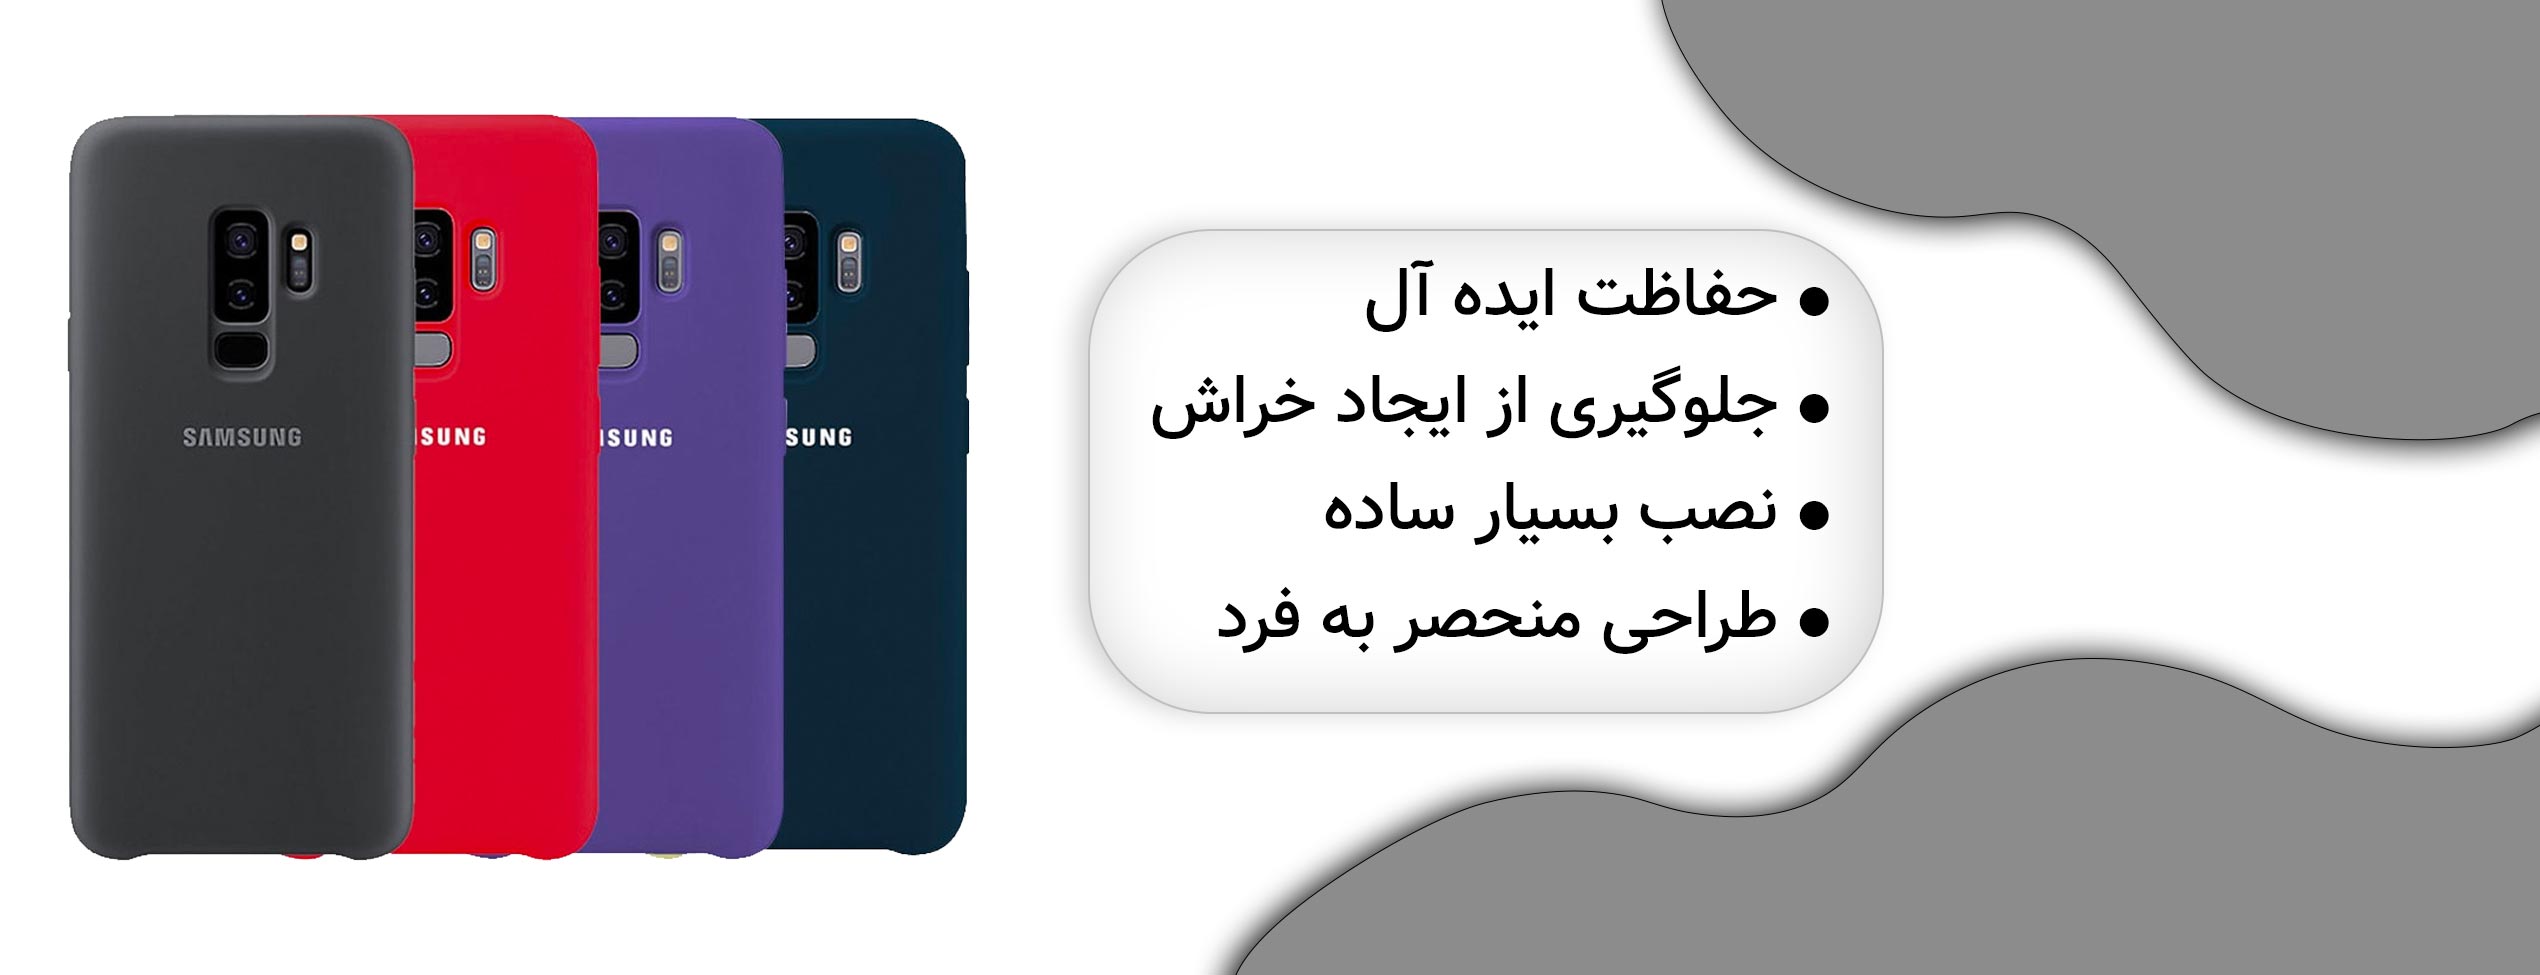 قاب سیلیکونی اورجینال سامسونگ Samsung S9 Plus